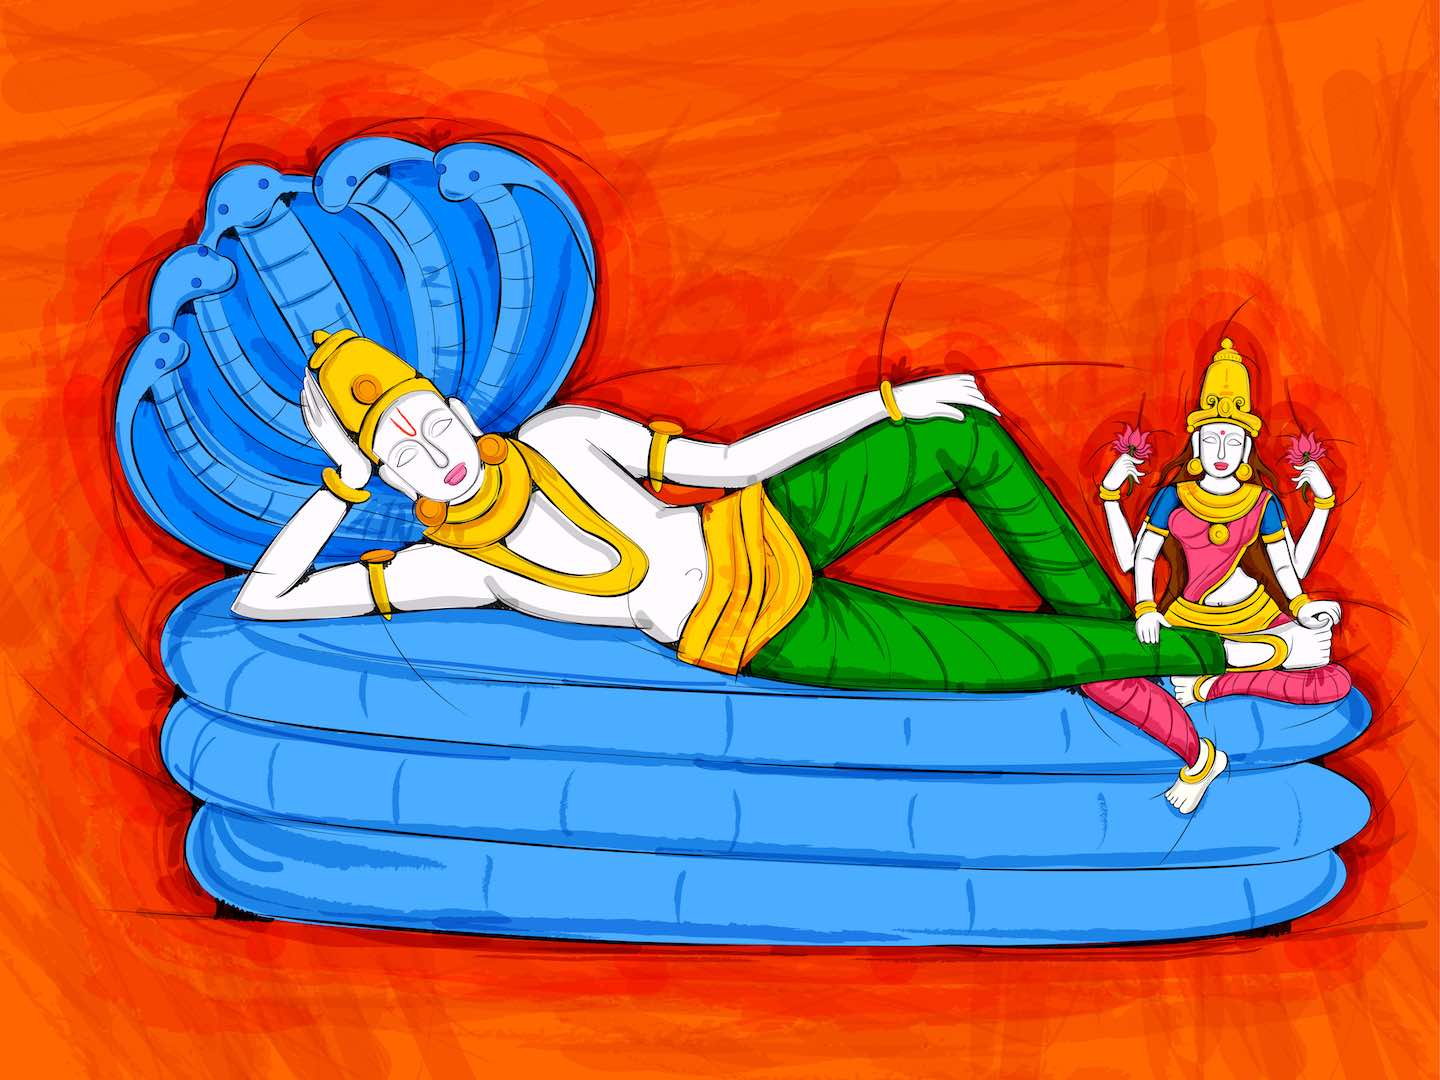 Vishnu sahasranama